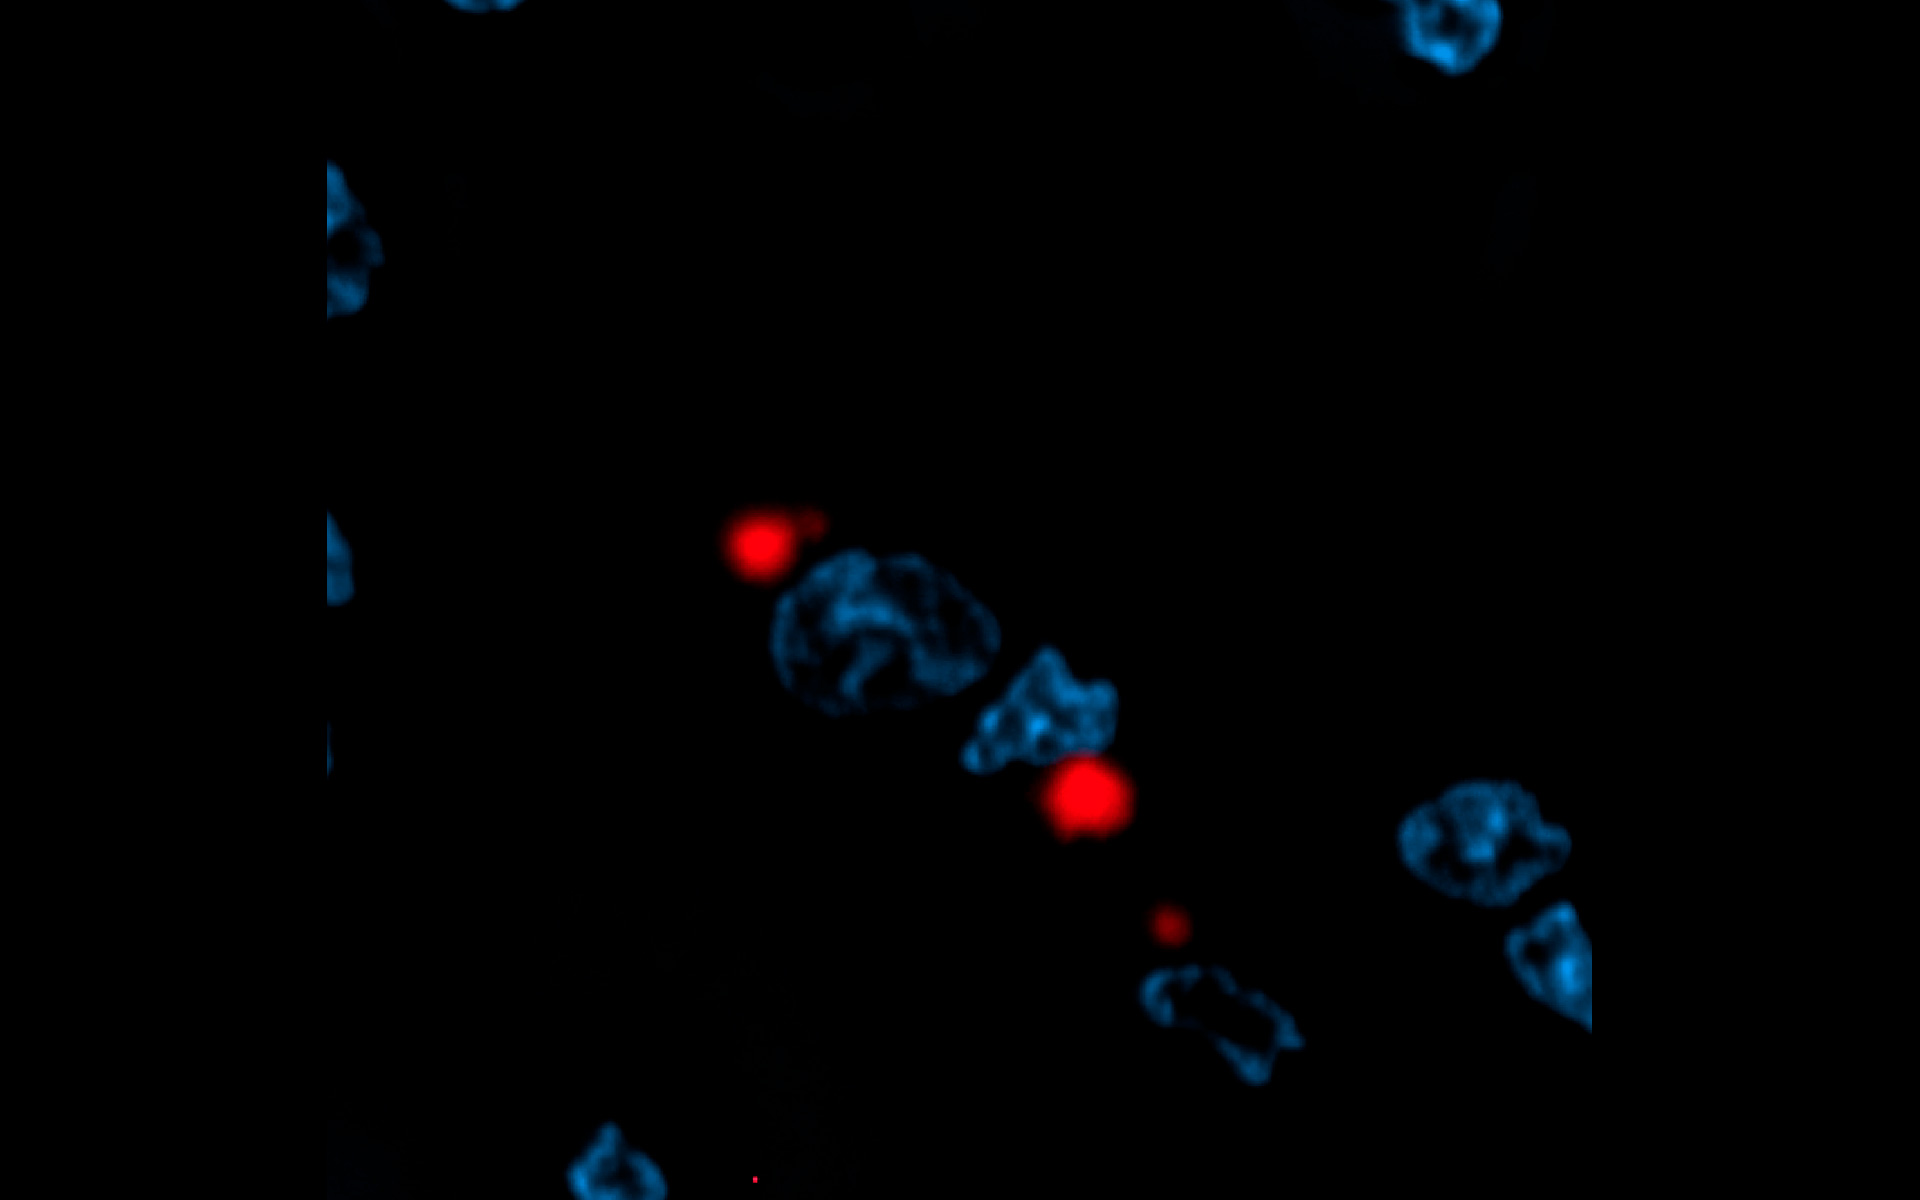 Macrófagos que muestran placas proteicas inducidas por la agregación de la proteína huntingtina mutante